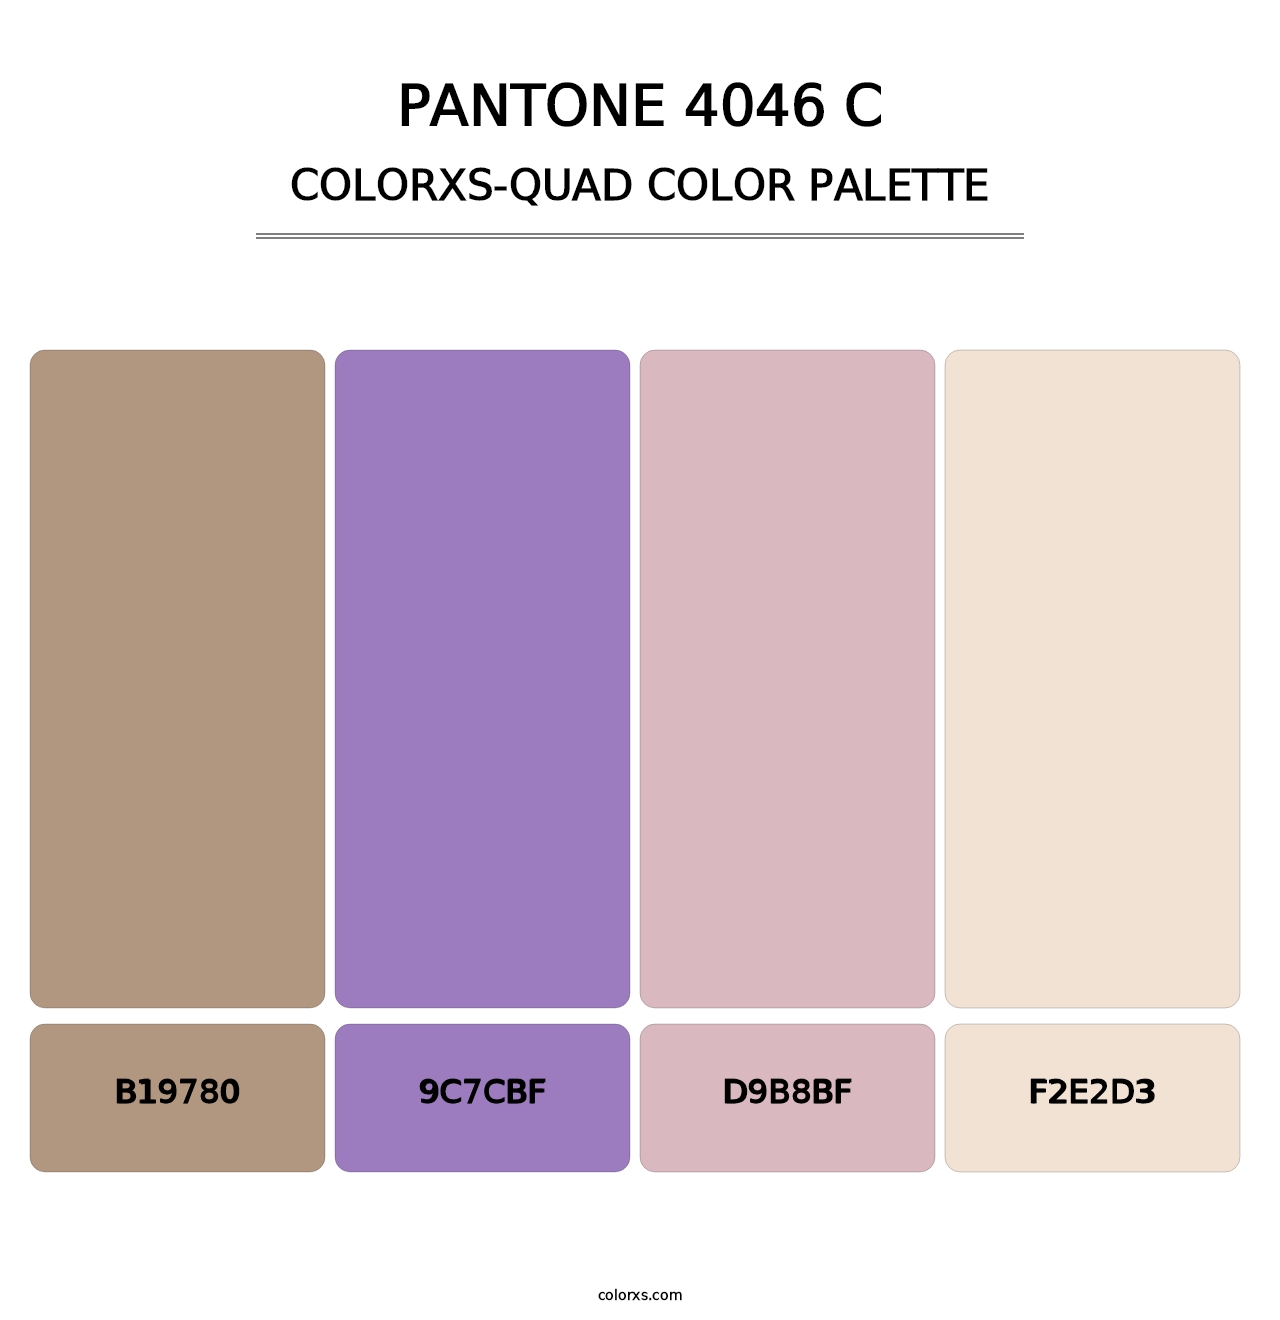 PANTONE 4046 C - Colorxs Quad Palette